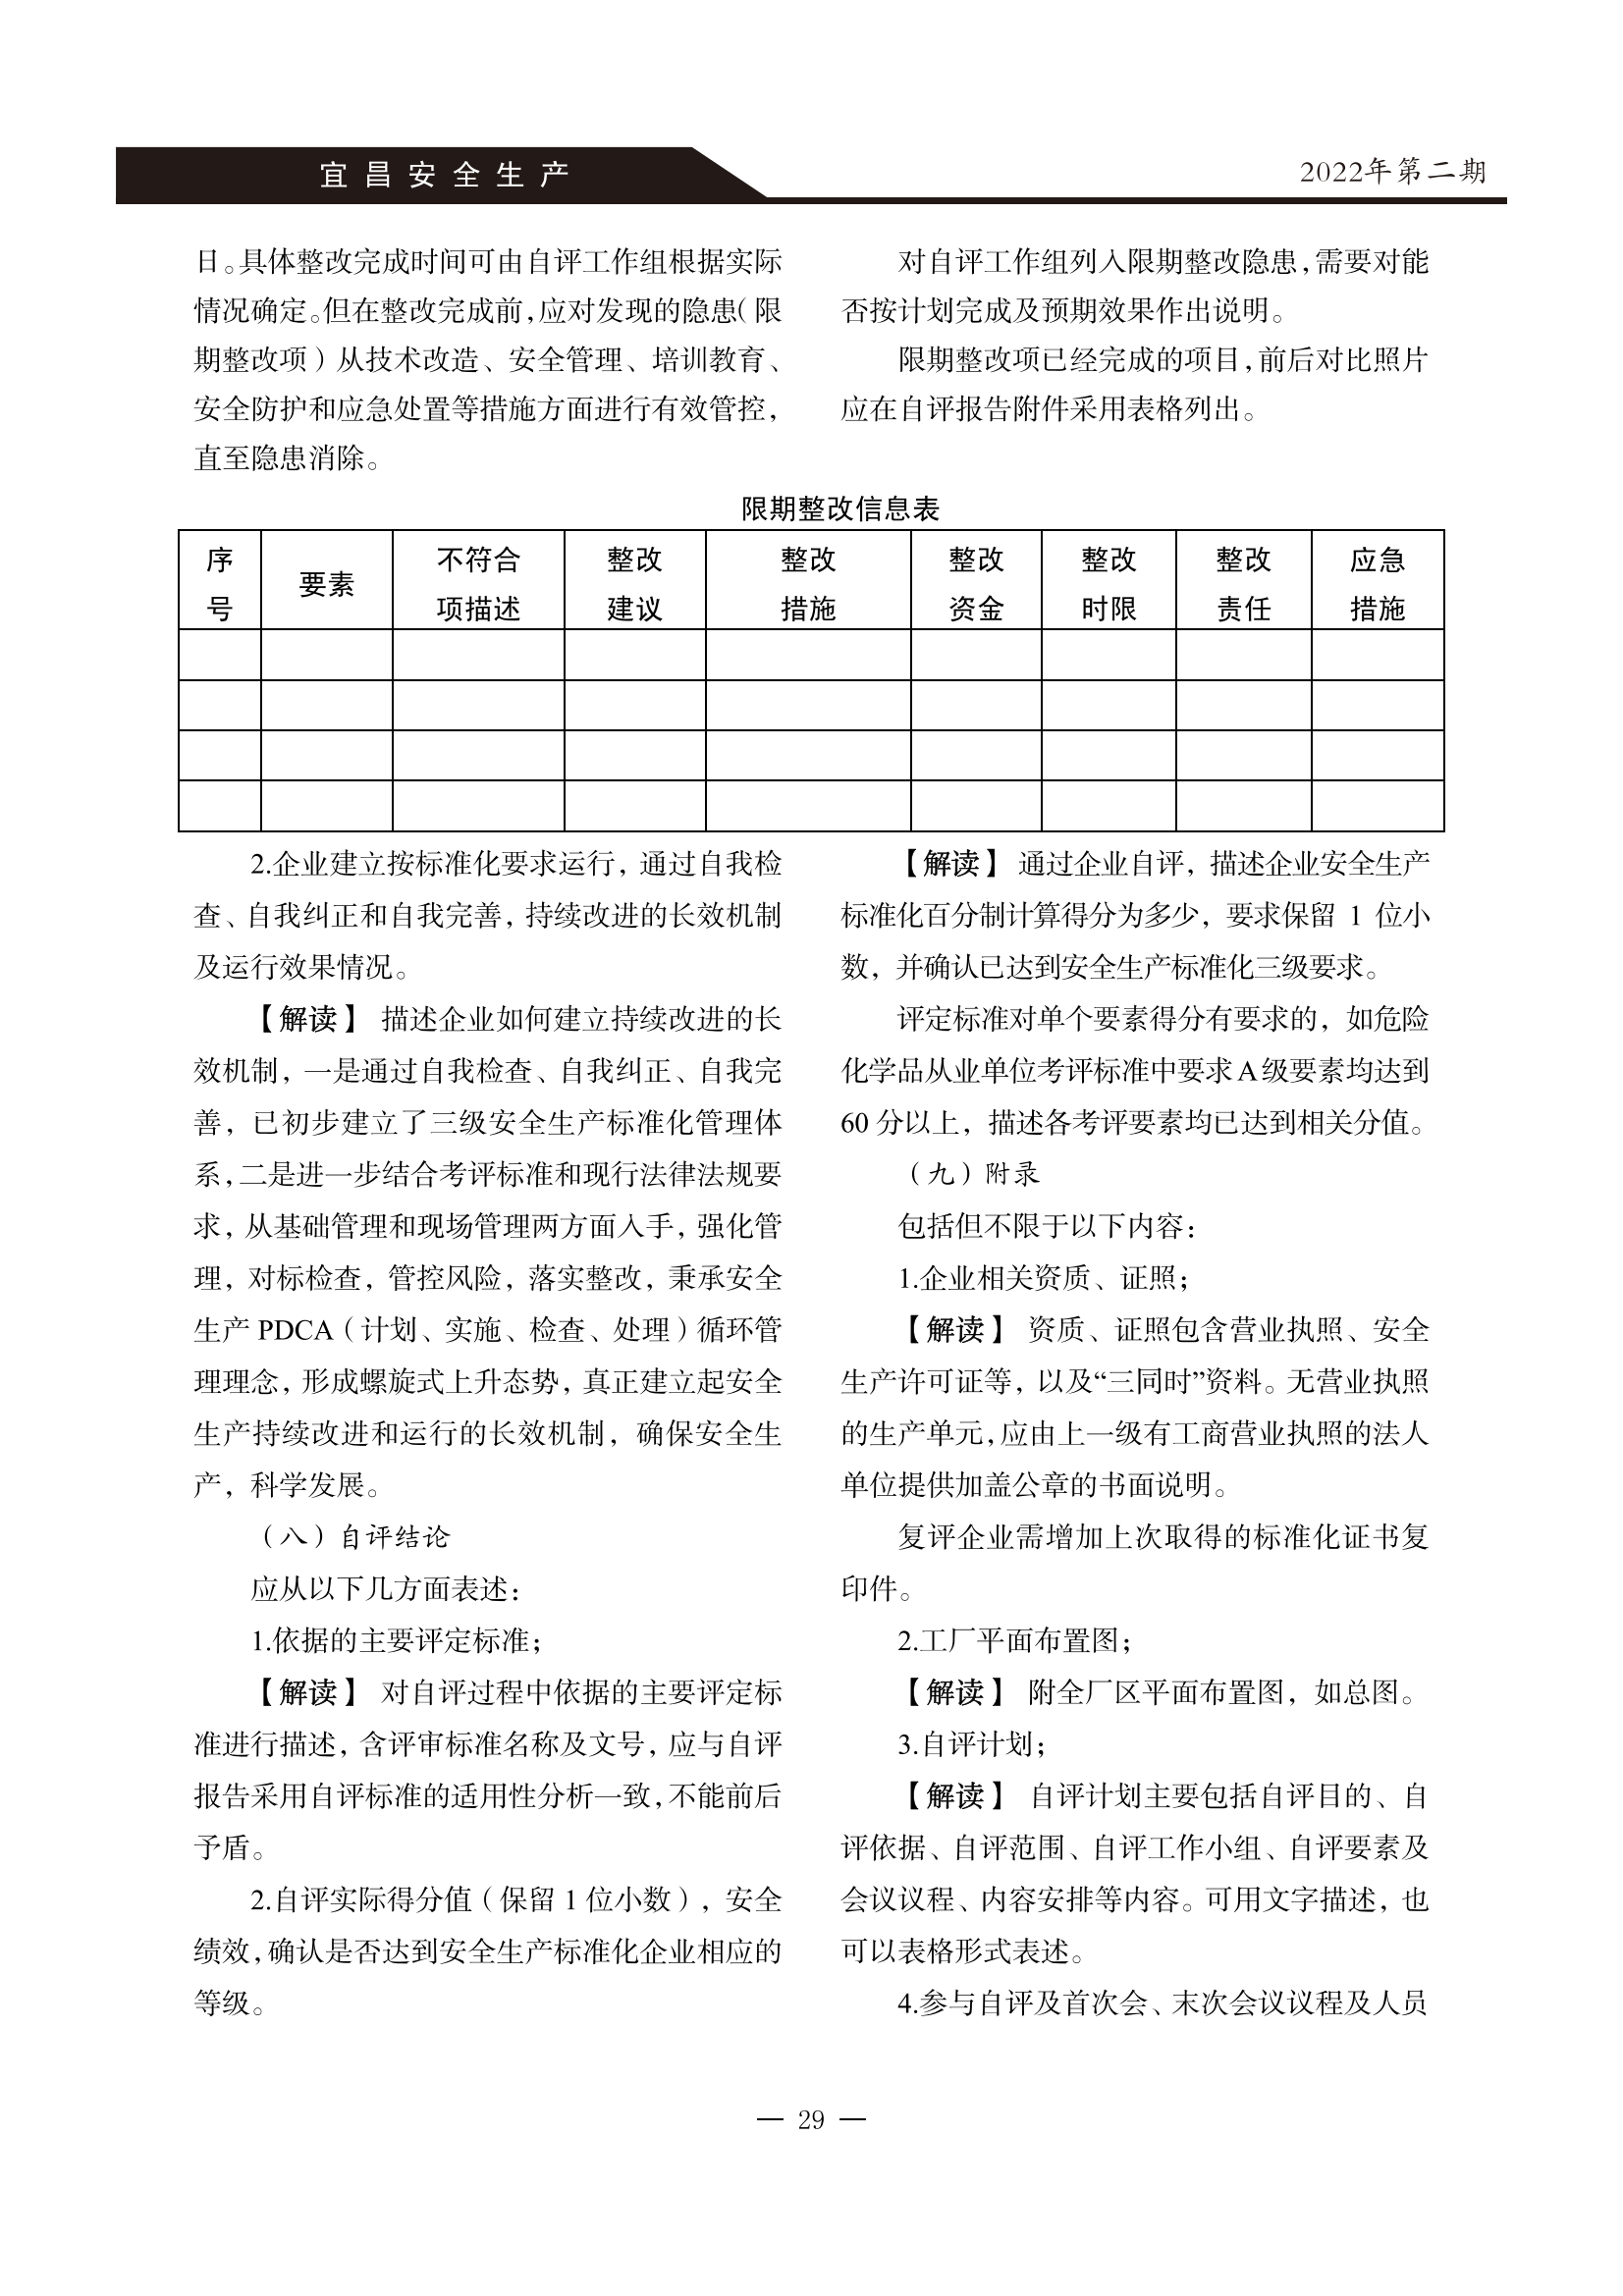 宜昌安全生产期刊第二期_31.png